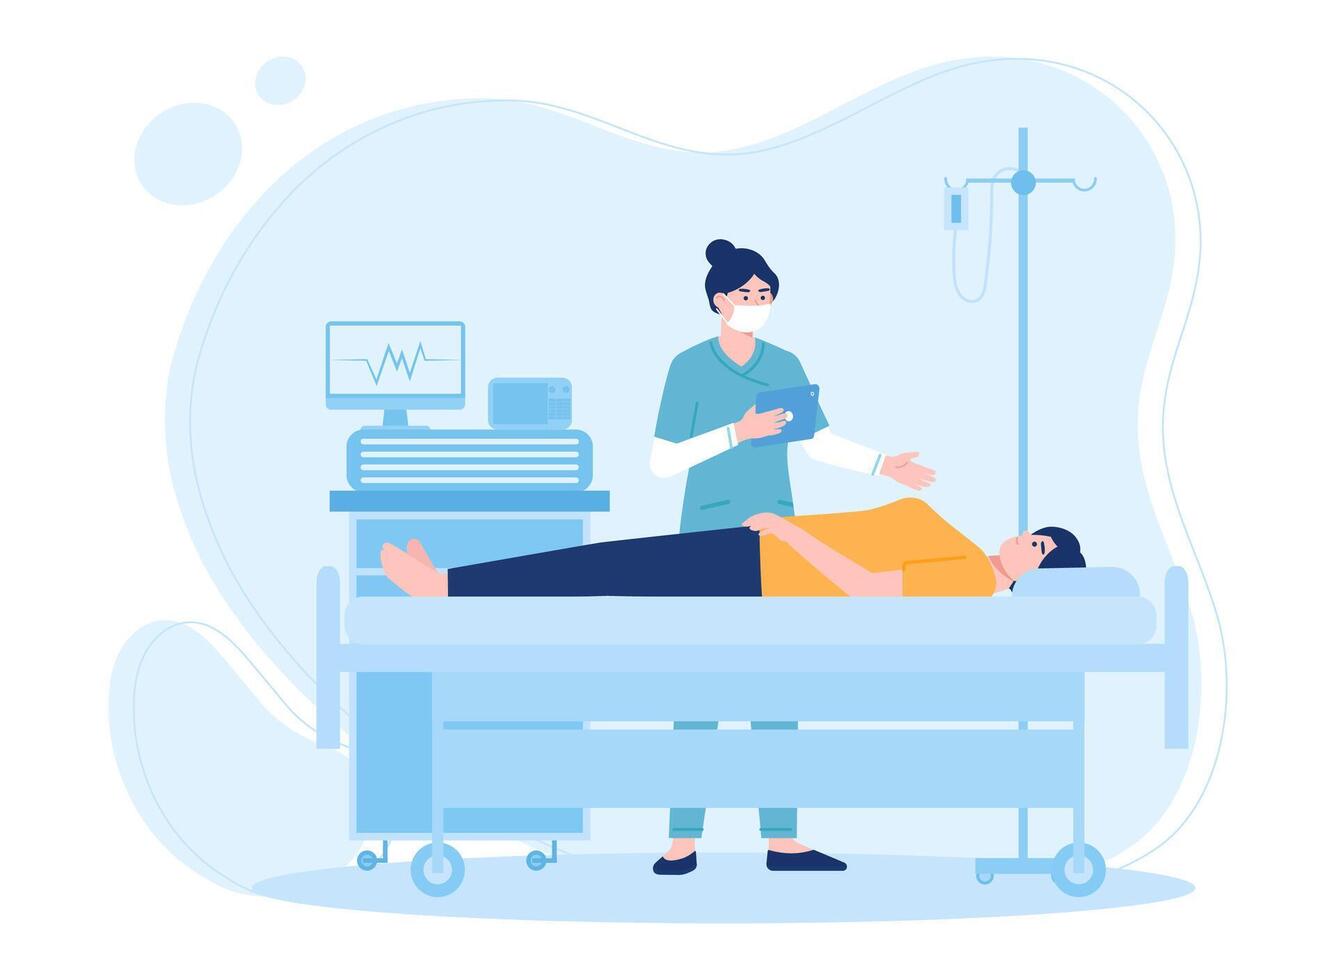 vrouw verpleegster bezoeken ziek persoon aan het liegen in bed in ziekenhuis concept vlak illustratie vector